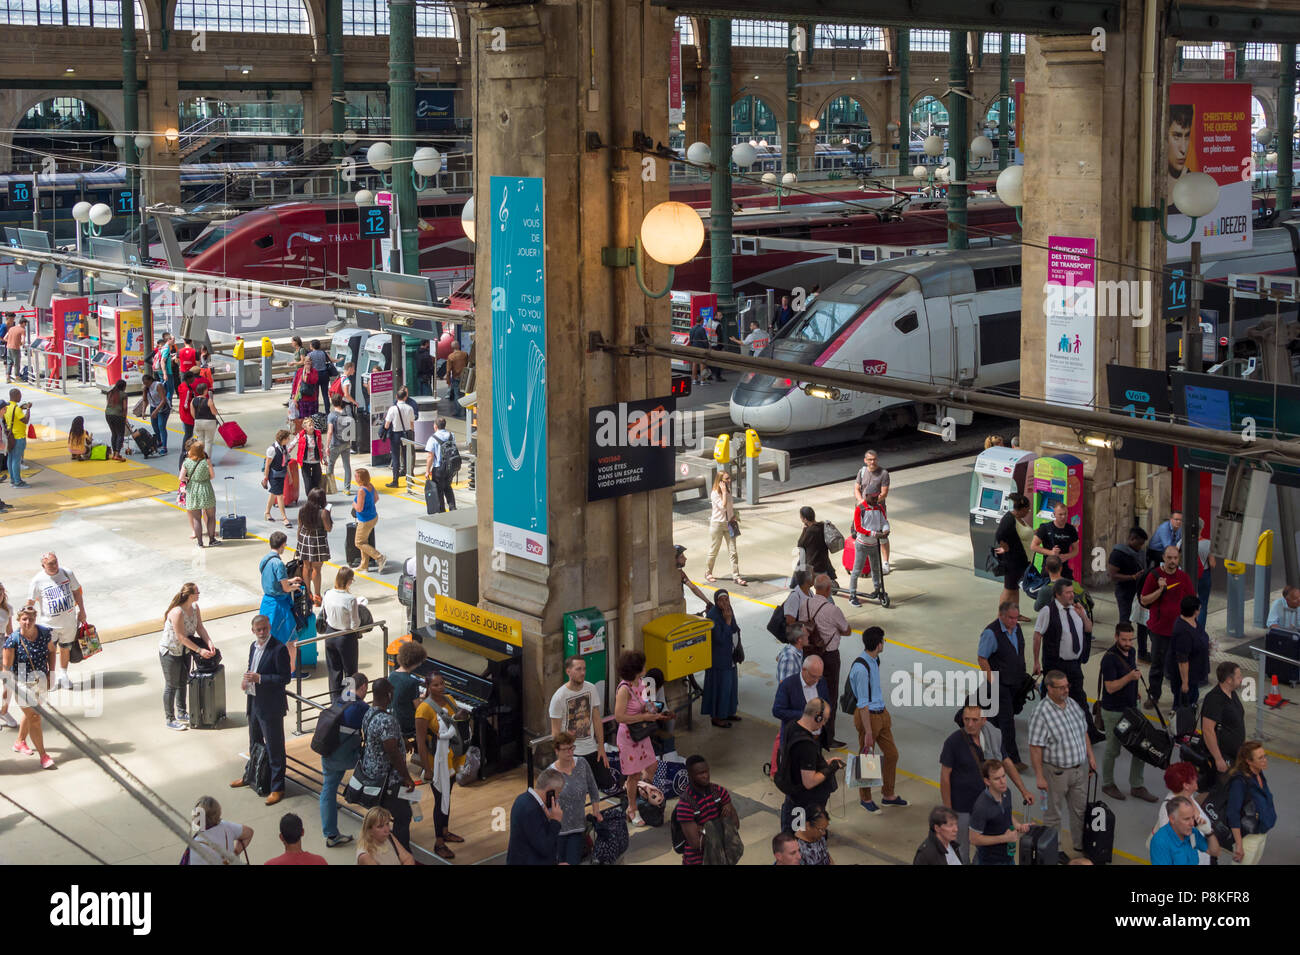 París, Francia - 20 de junio de 2018: la gente espera de sus trenes en el hall principal de la estación Gare du Nord. Foto de stock